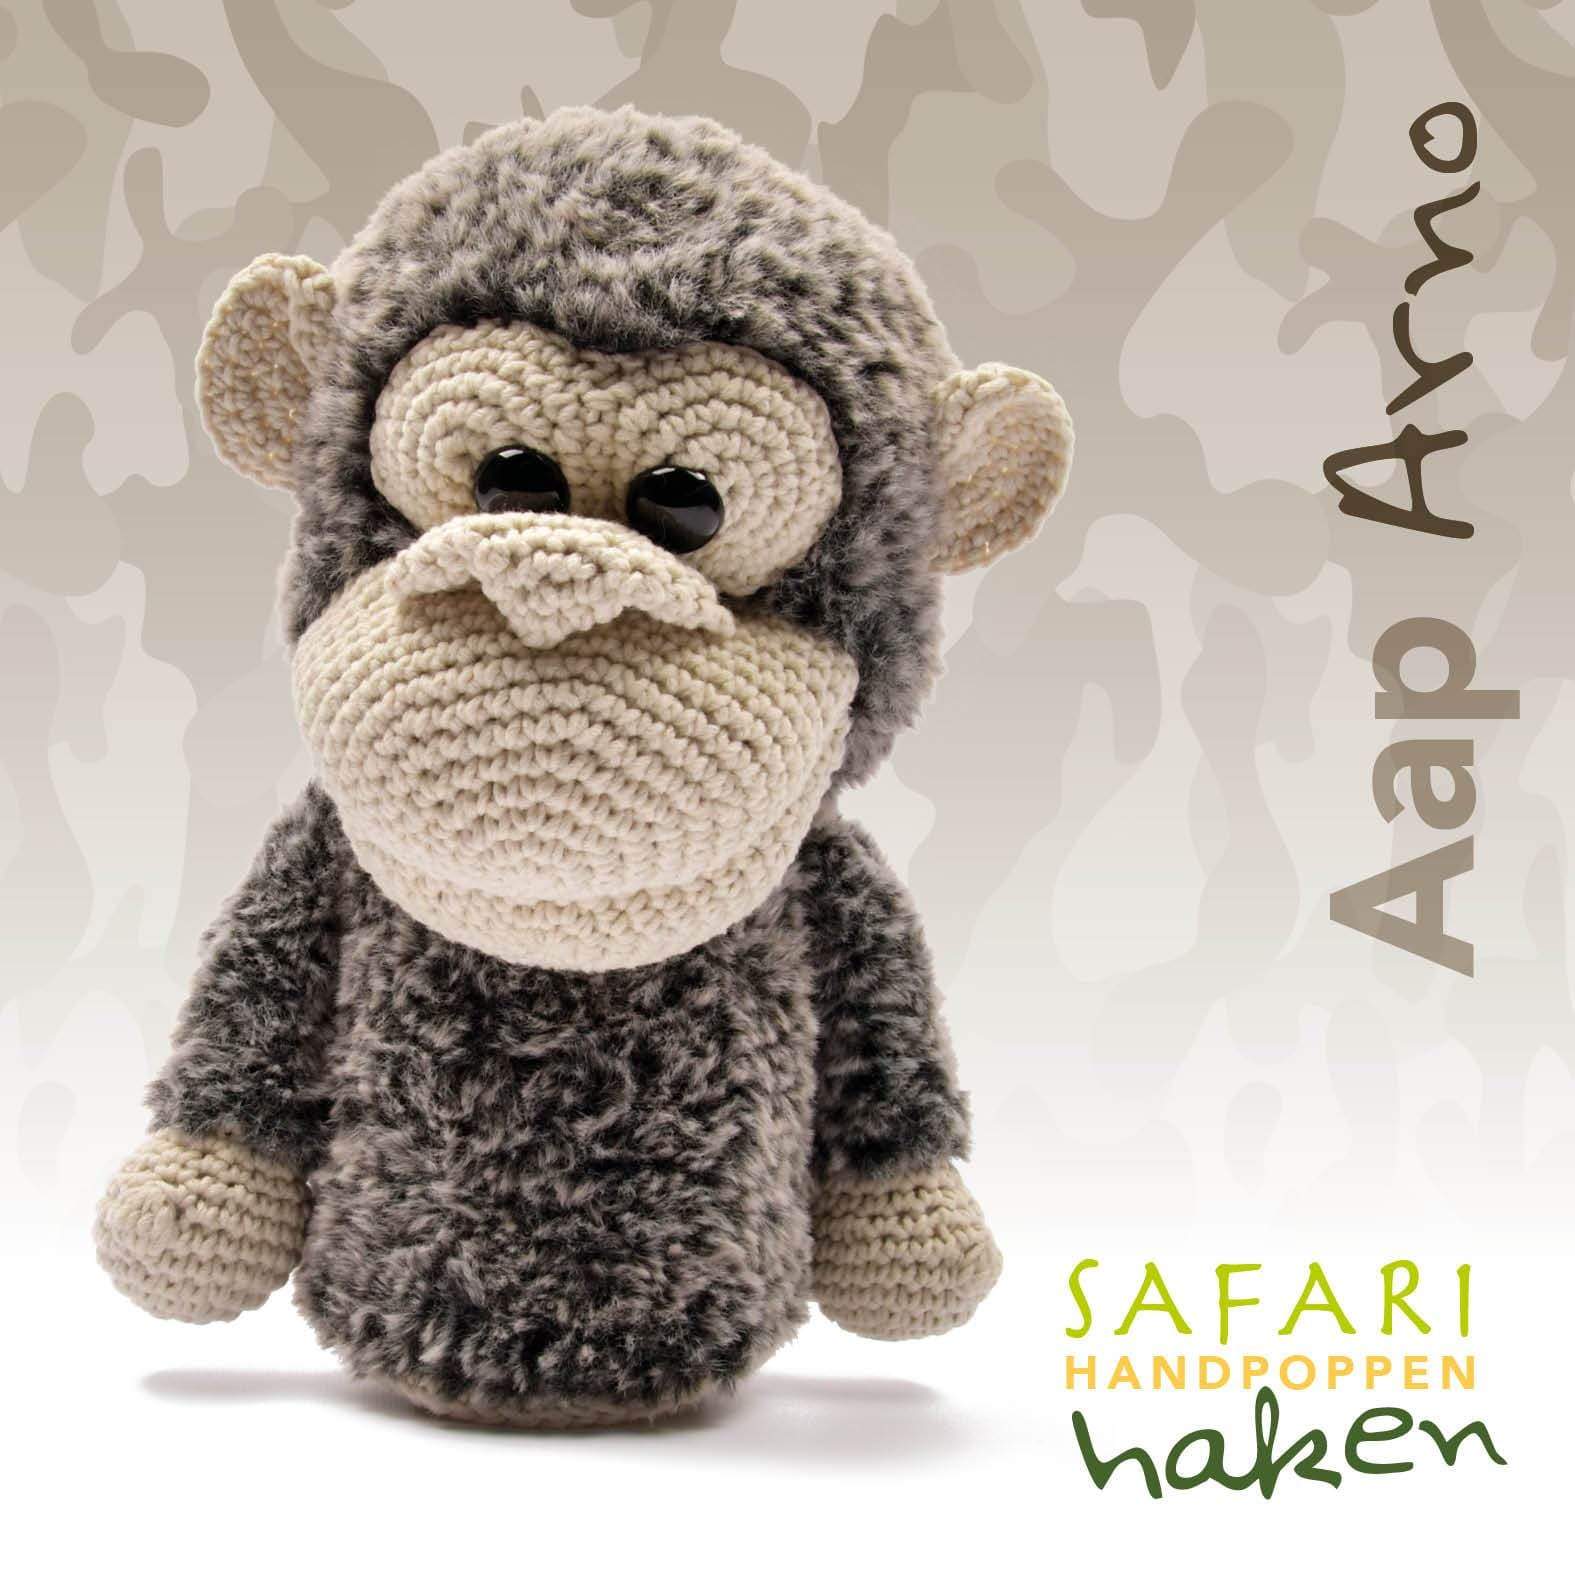 Afhankelijkheid dat is alles overzee Garenpakket: Safari handpop aap Arno | CuteDutch